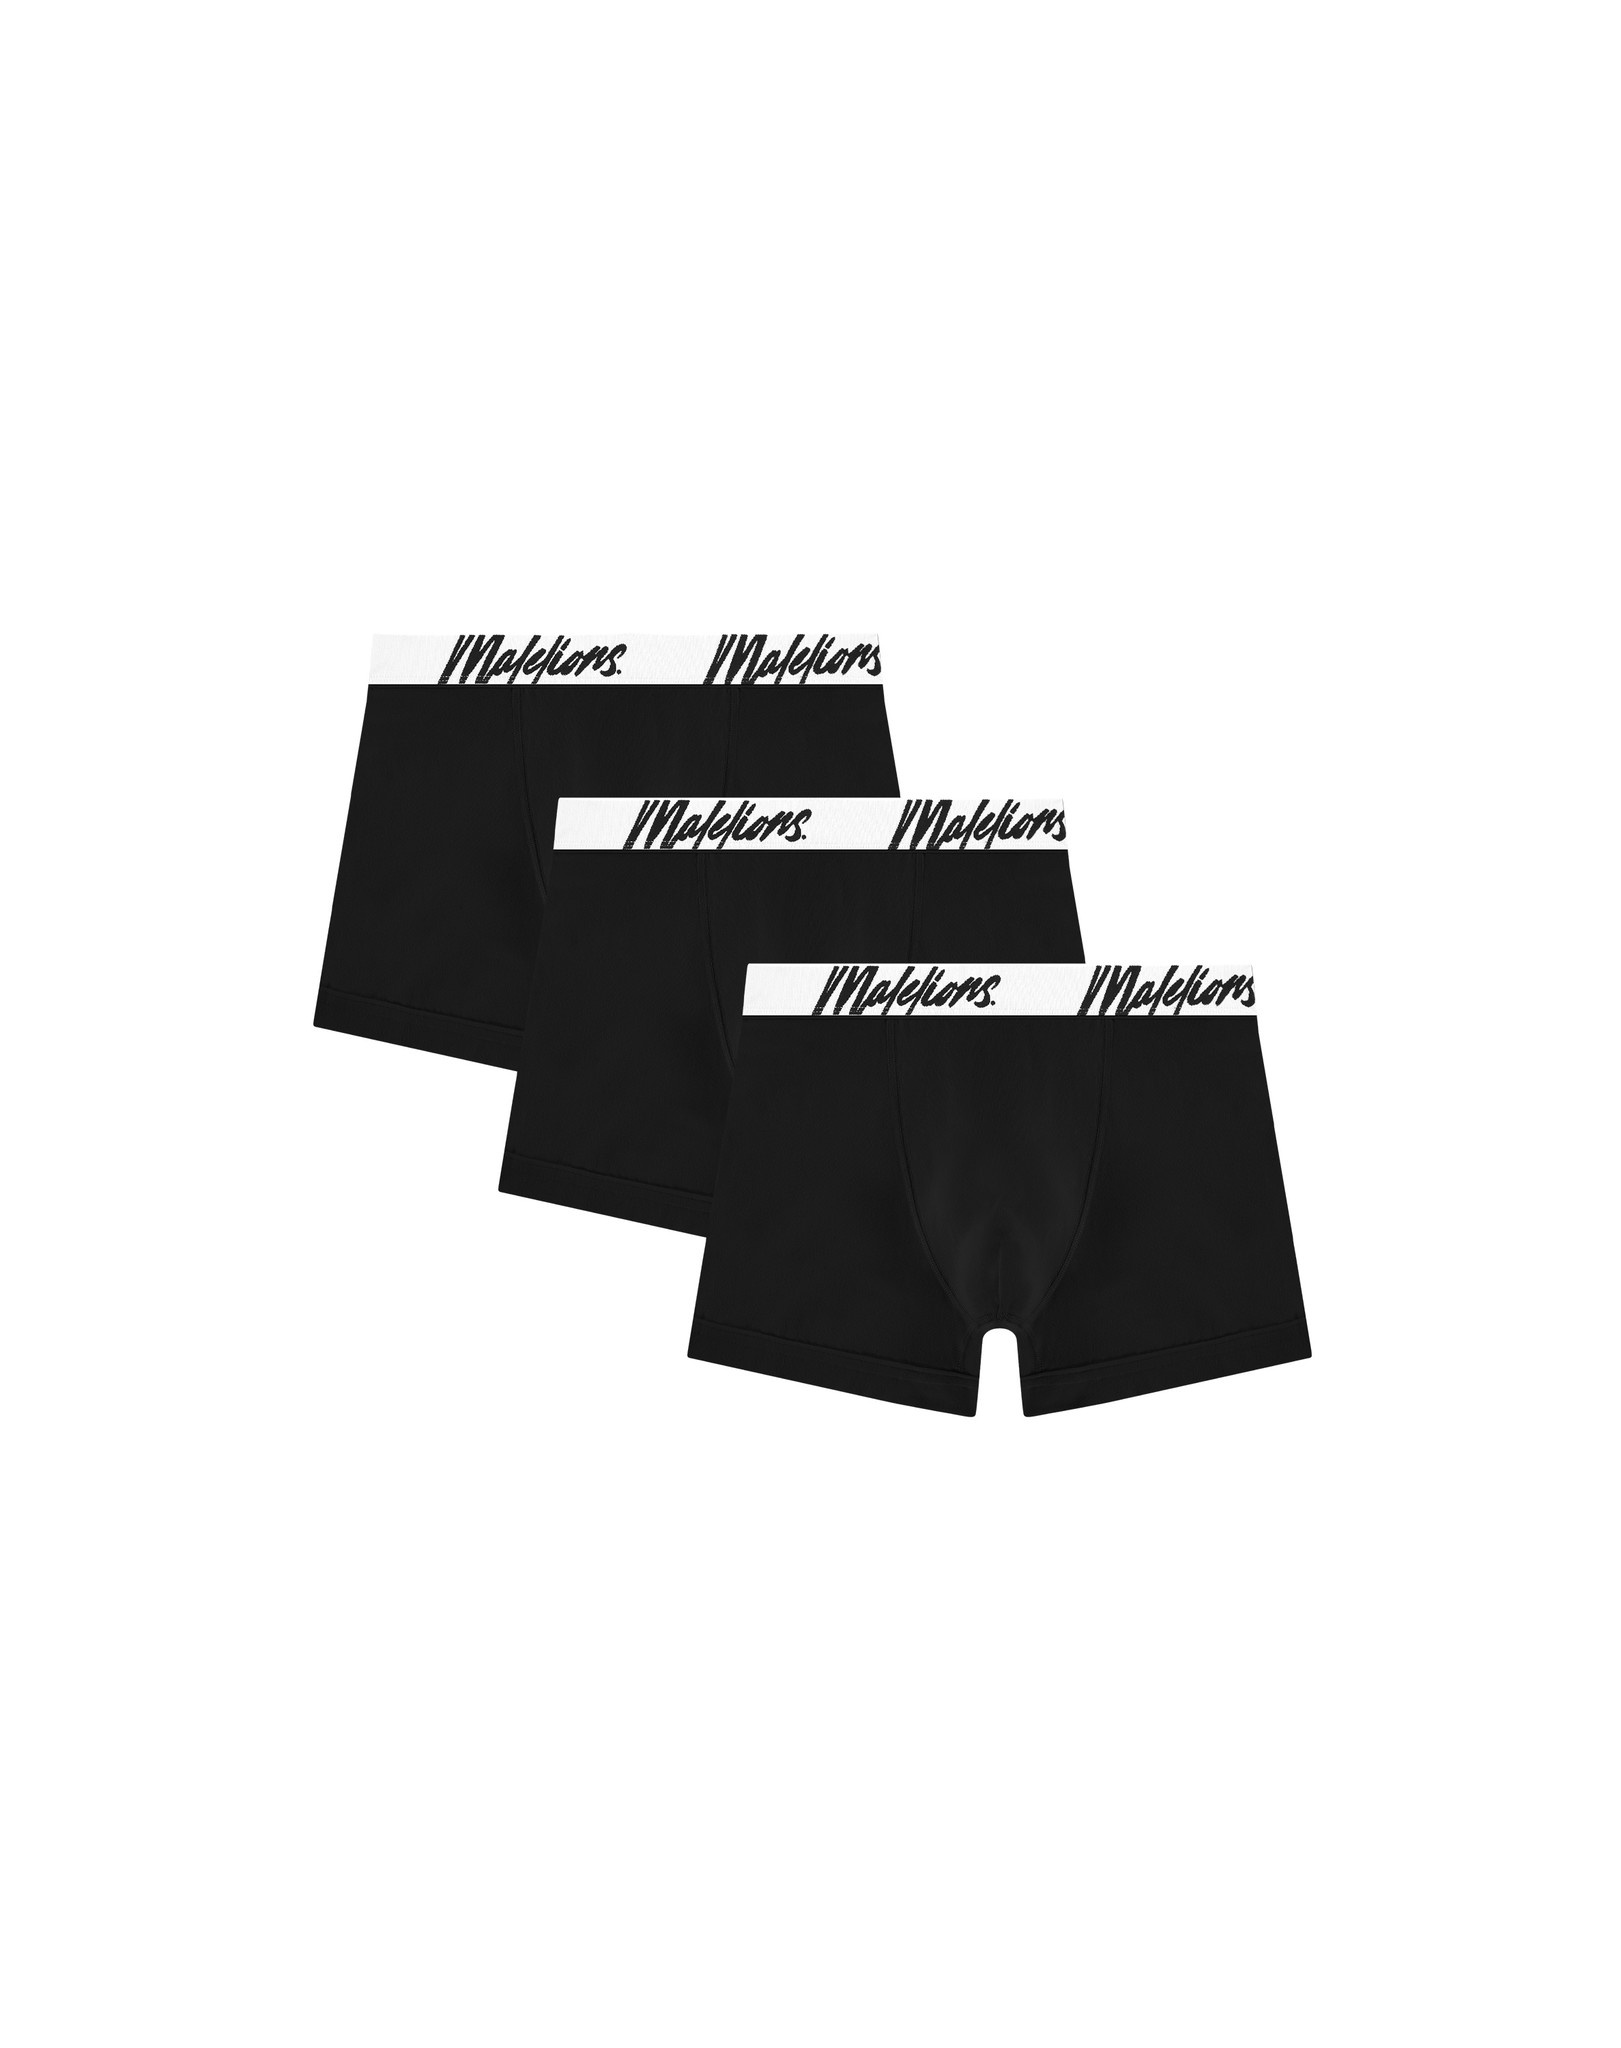 Malelions Men Boxer 3-Pack - Black/White